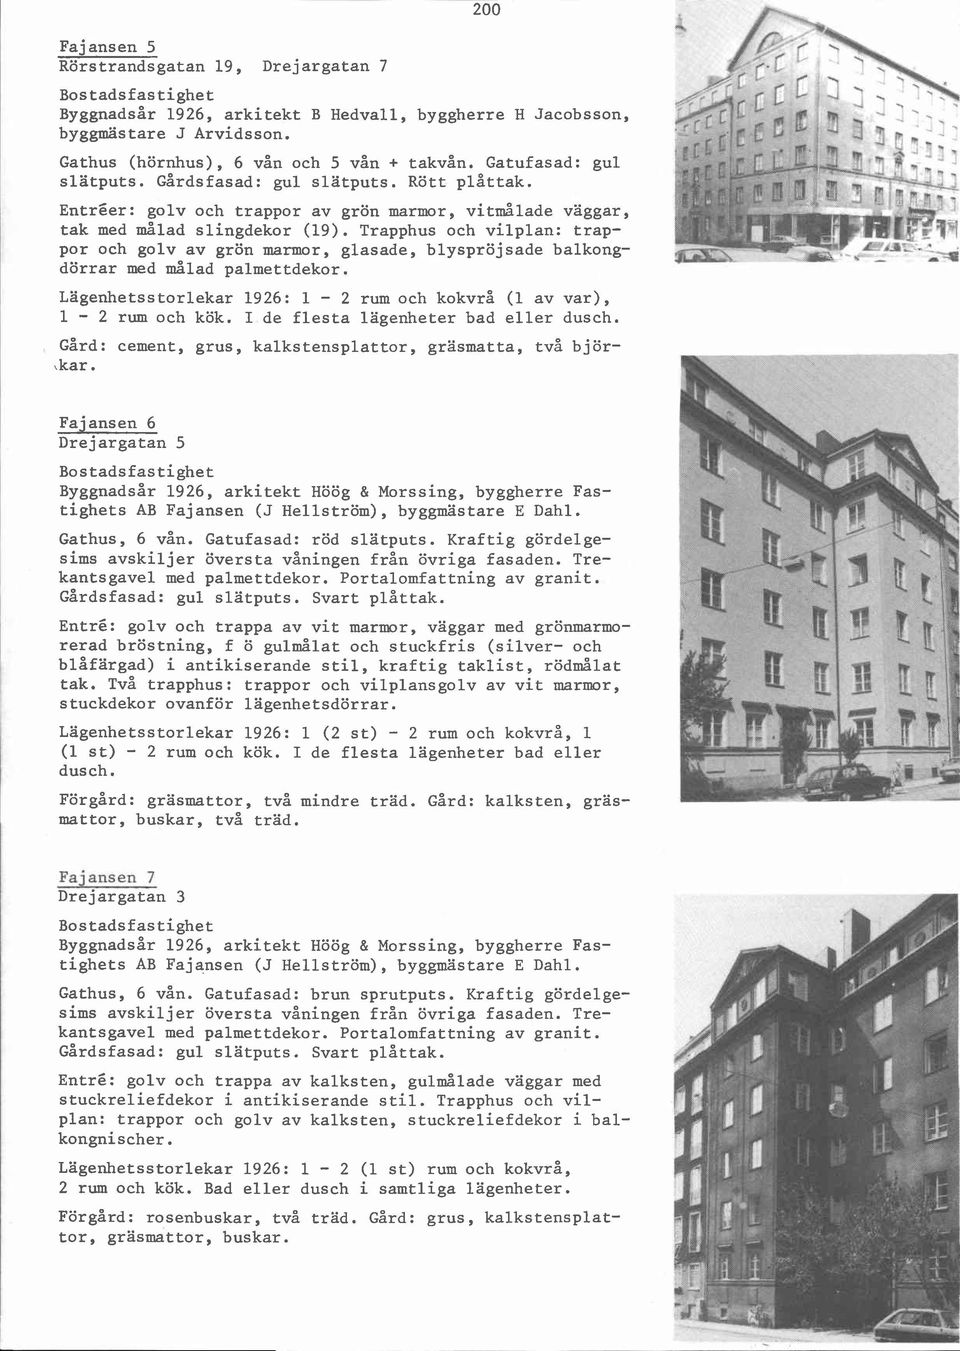 Trapphus och vilplan: trappor och golv av grön marmor, glasade, blyspröjsade balkong- p ~ *" - dörrar med målad palmettdekor. Lägenhetsstorlekar 1926: 1-2 rum och kokvrå (1 av var), 1-2 rum och kök.